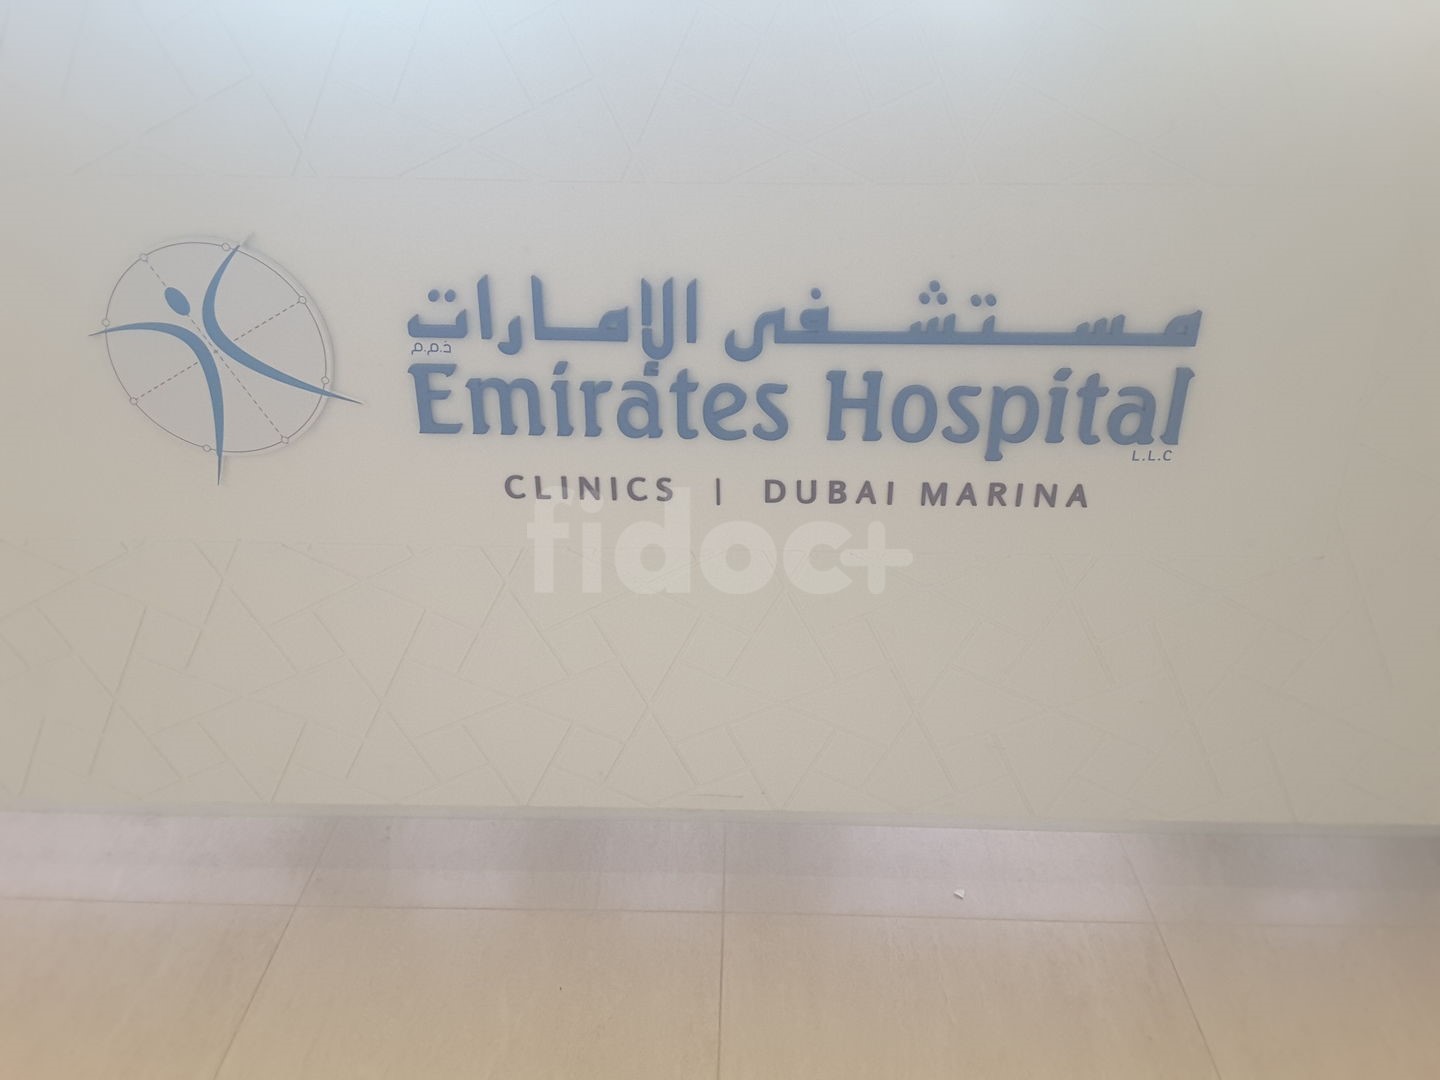 Emirates Hospital Clinic, Dubai